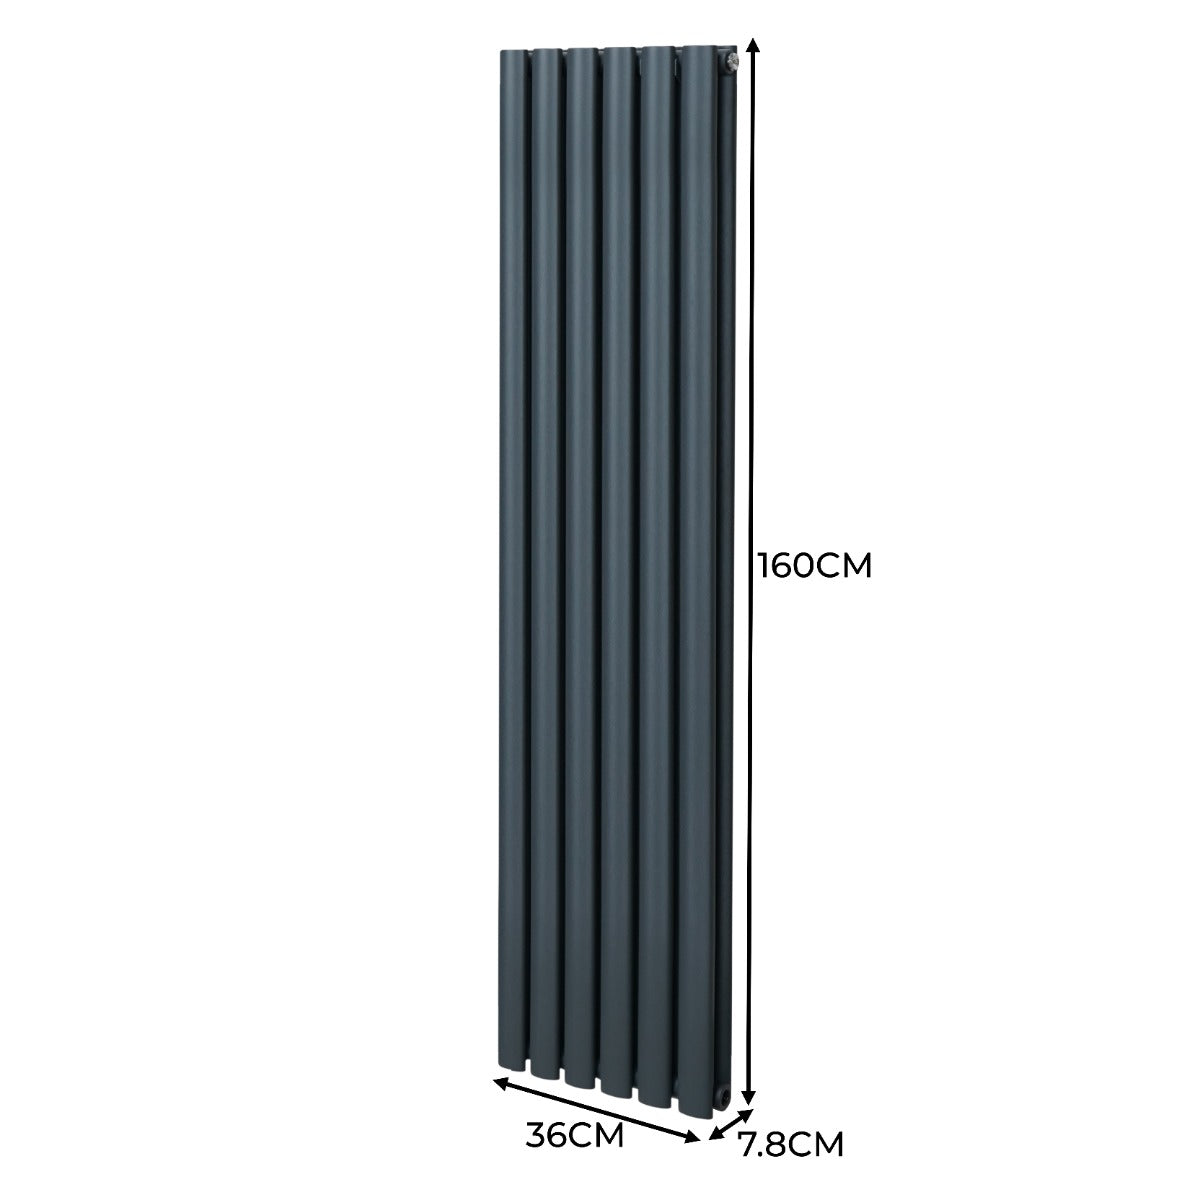 Radiatore a colonna ovale e valvole cromate TRV - 1600mm x 360mm - Grigio antracite